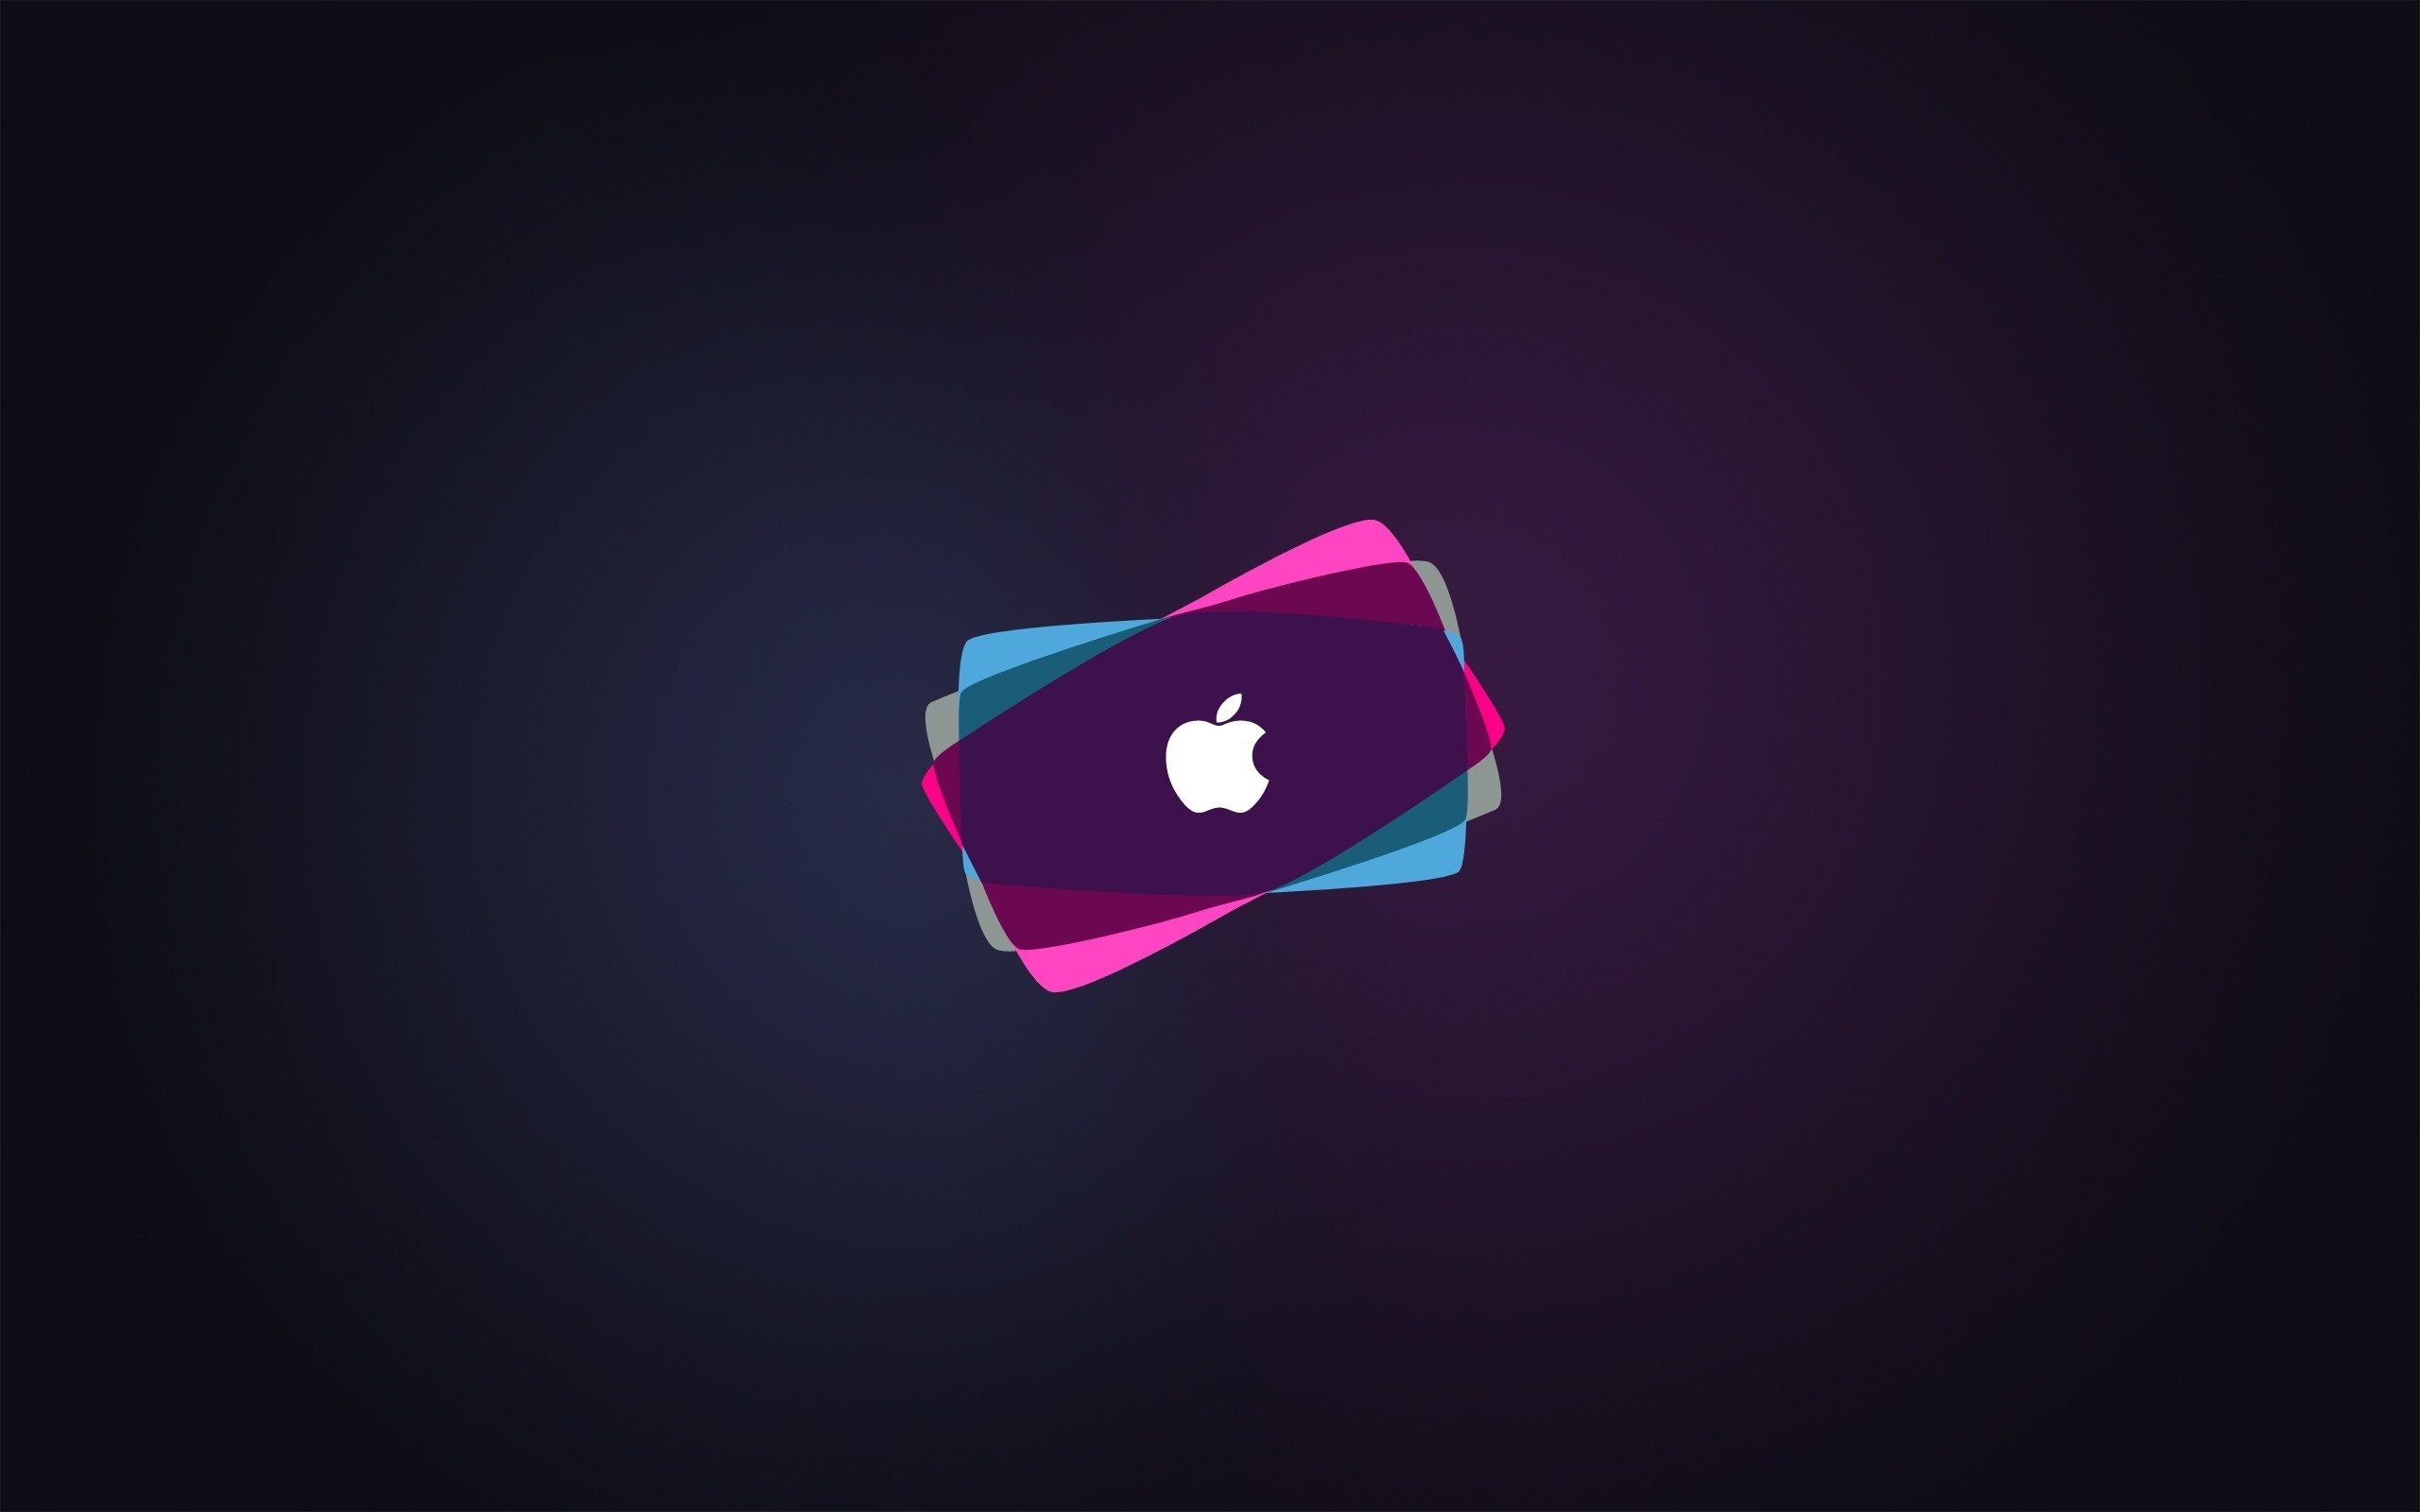 Apple Hd Wallpapers Apple Logo Desktop Backgrounds – inside Apple Hd Wallpapers